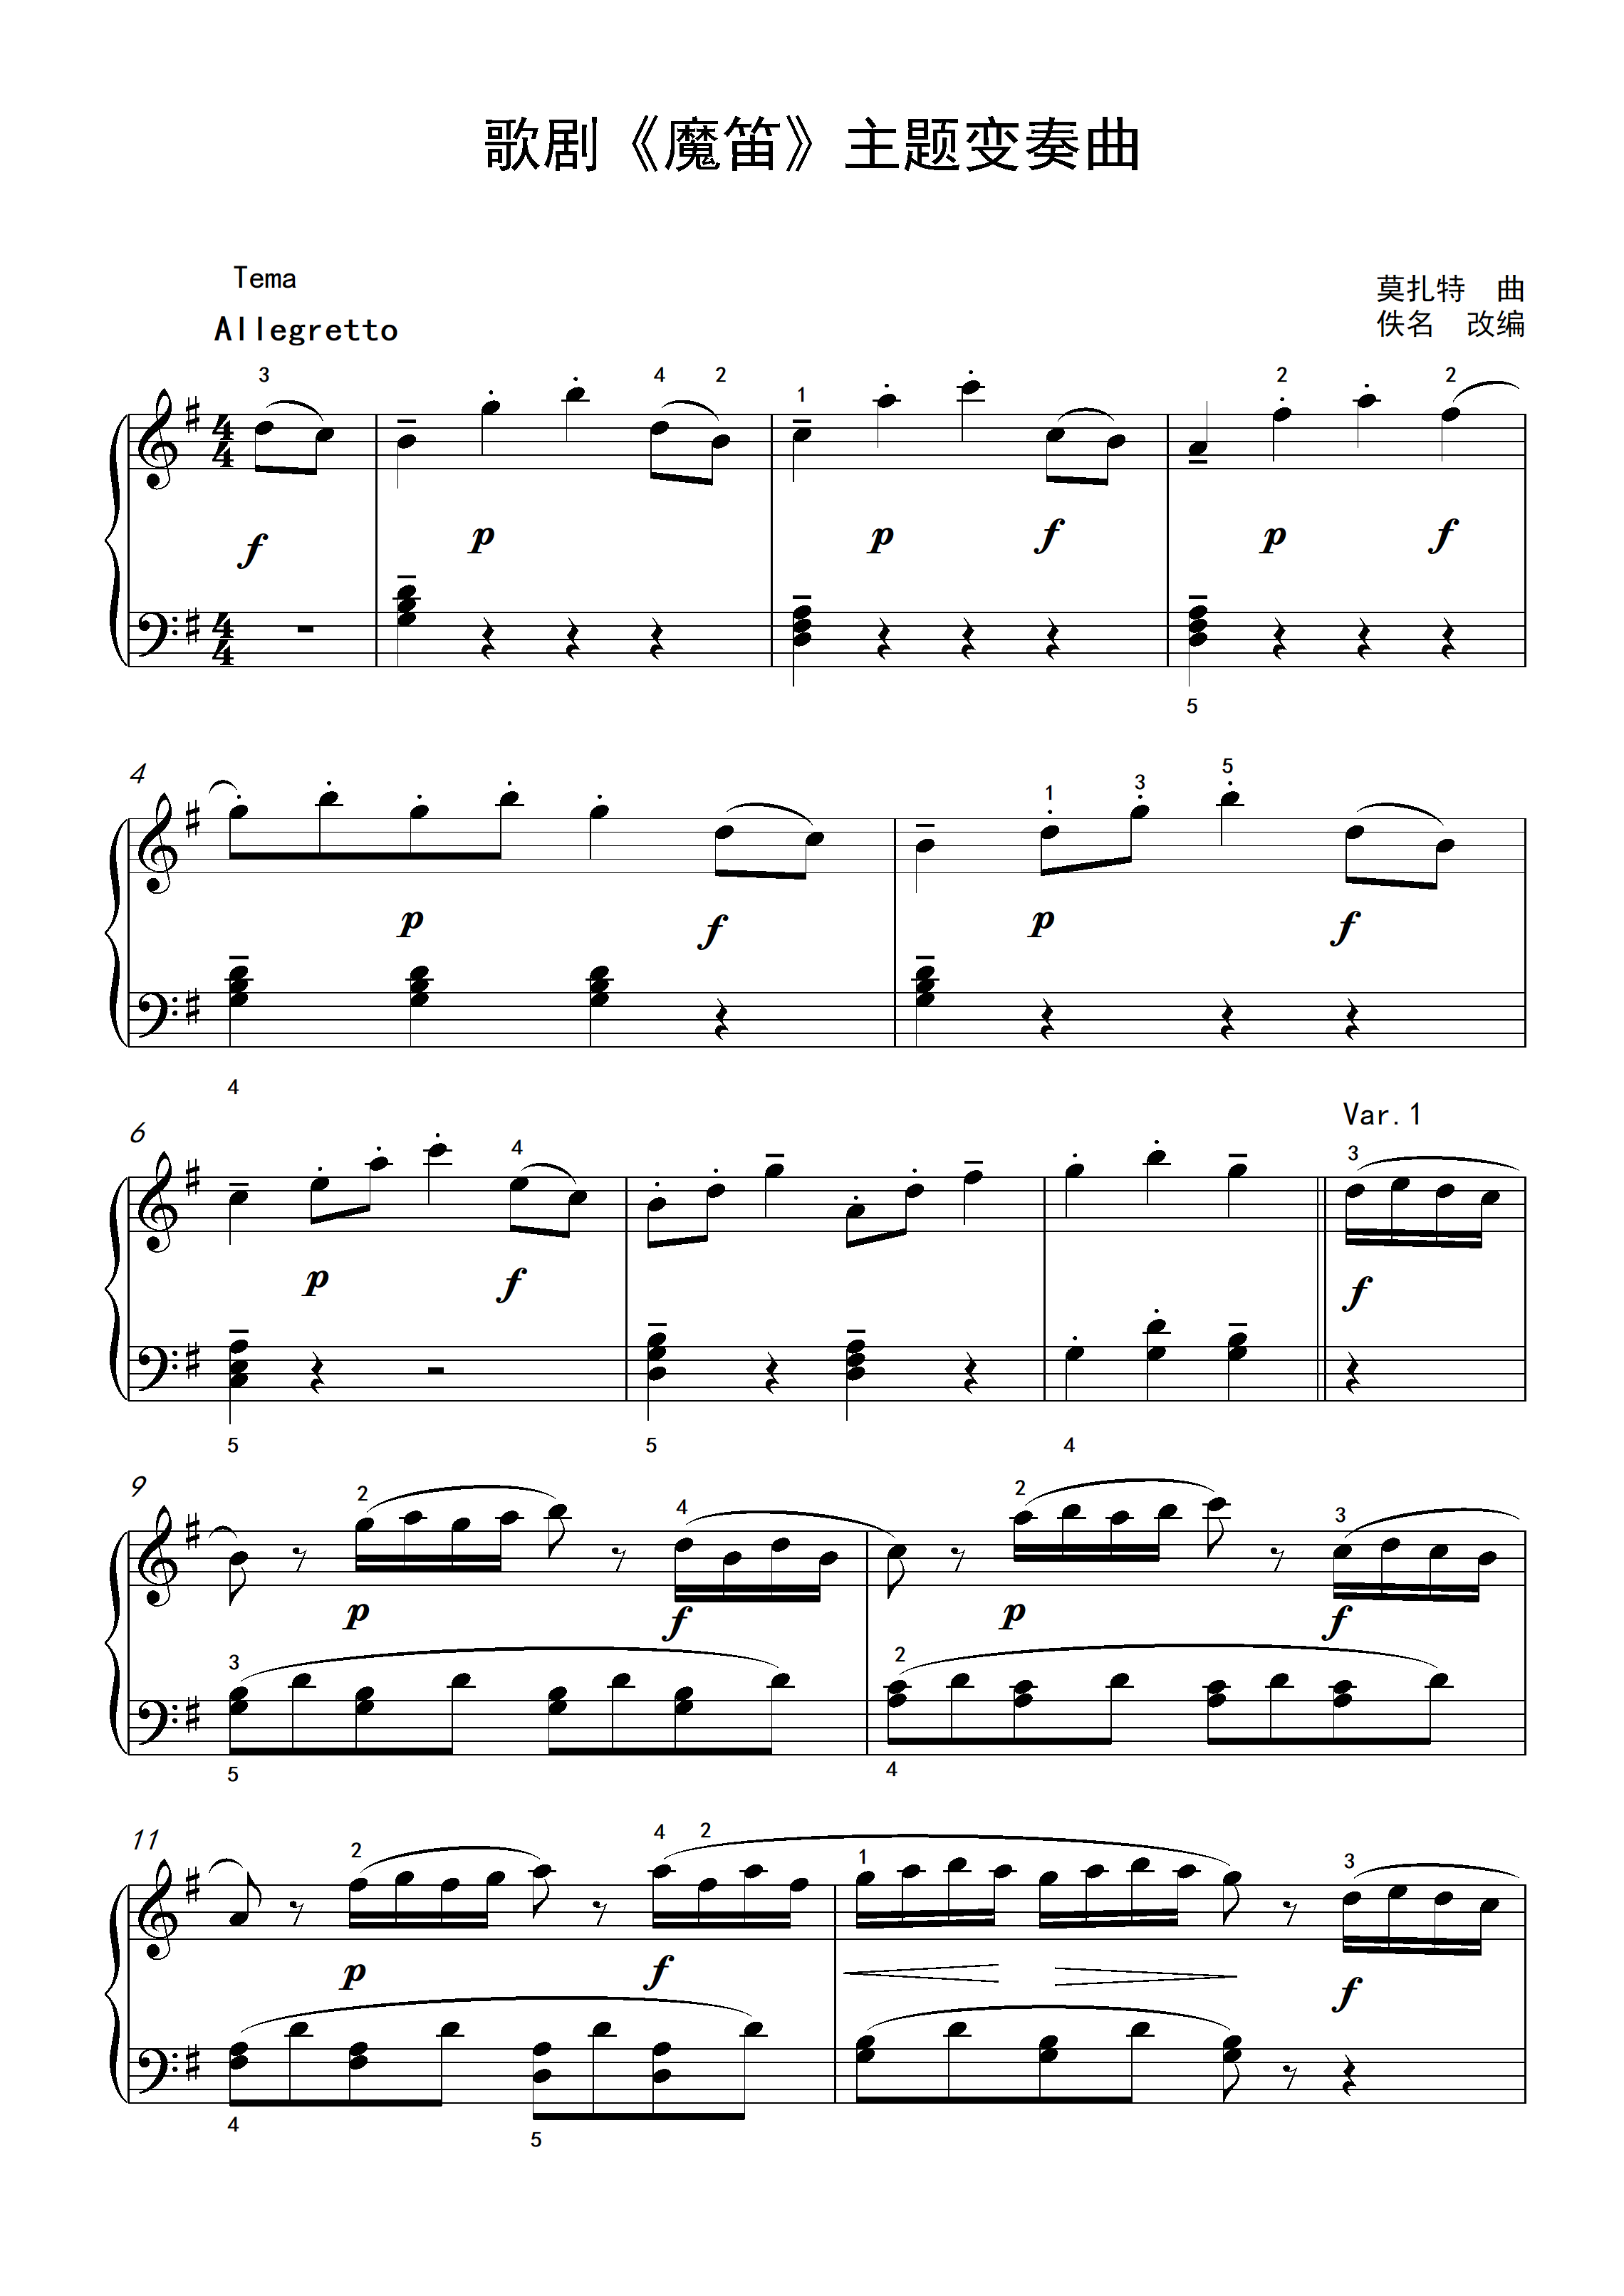 《魔笛》主题变奏曲－娱乐版 钢琴曲谱，于斯课堂精心出品。于斯曲谱大全，钢琴谱，简谱，五线谱尽在其中。